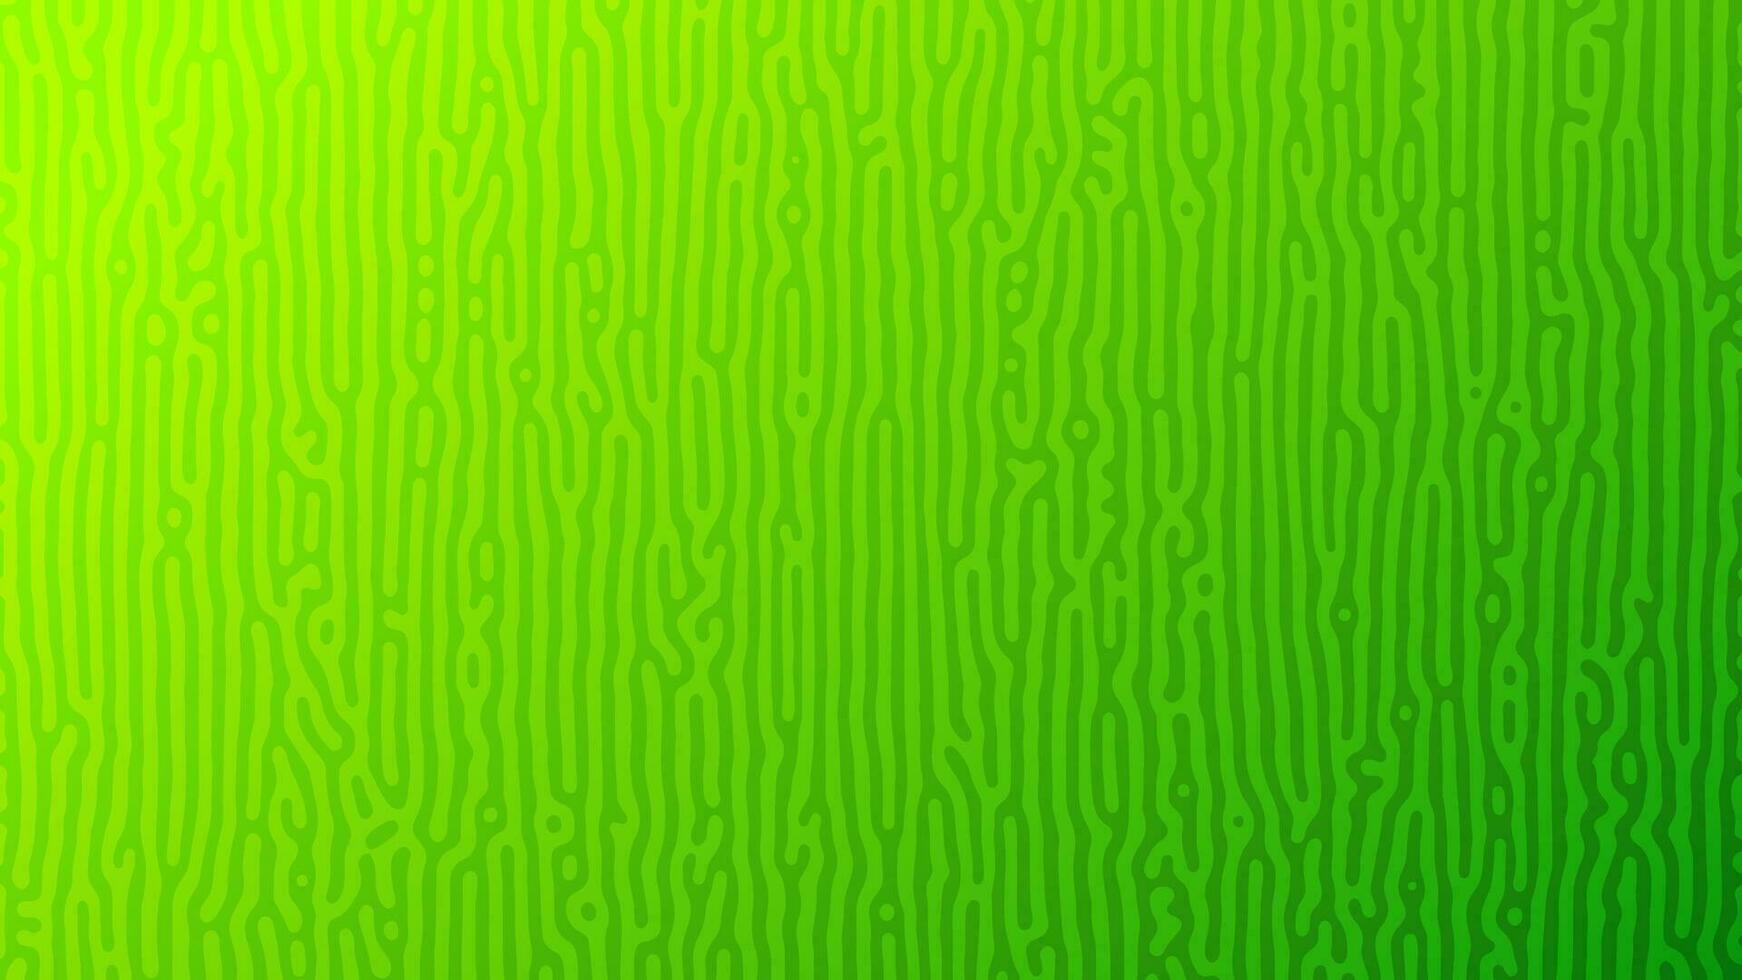 Grün turing Reaktion Gradient Hintergrund. abstrakt Diffusion Muster mit chaotisch Formen. Vektor Illustration.